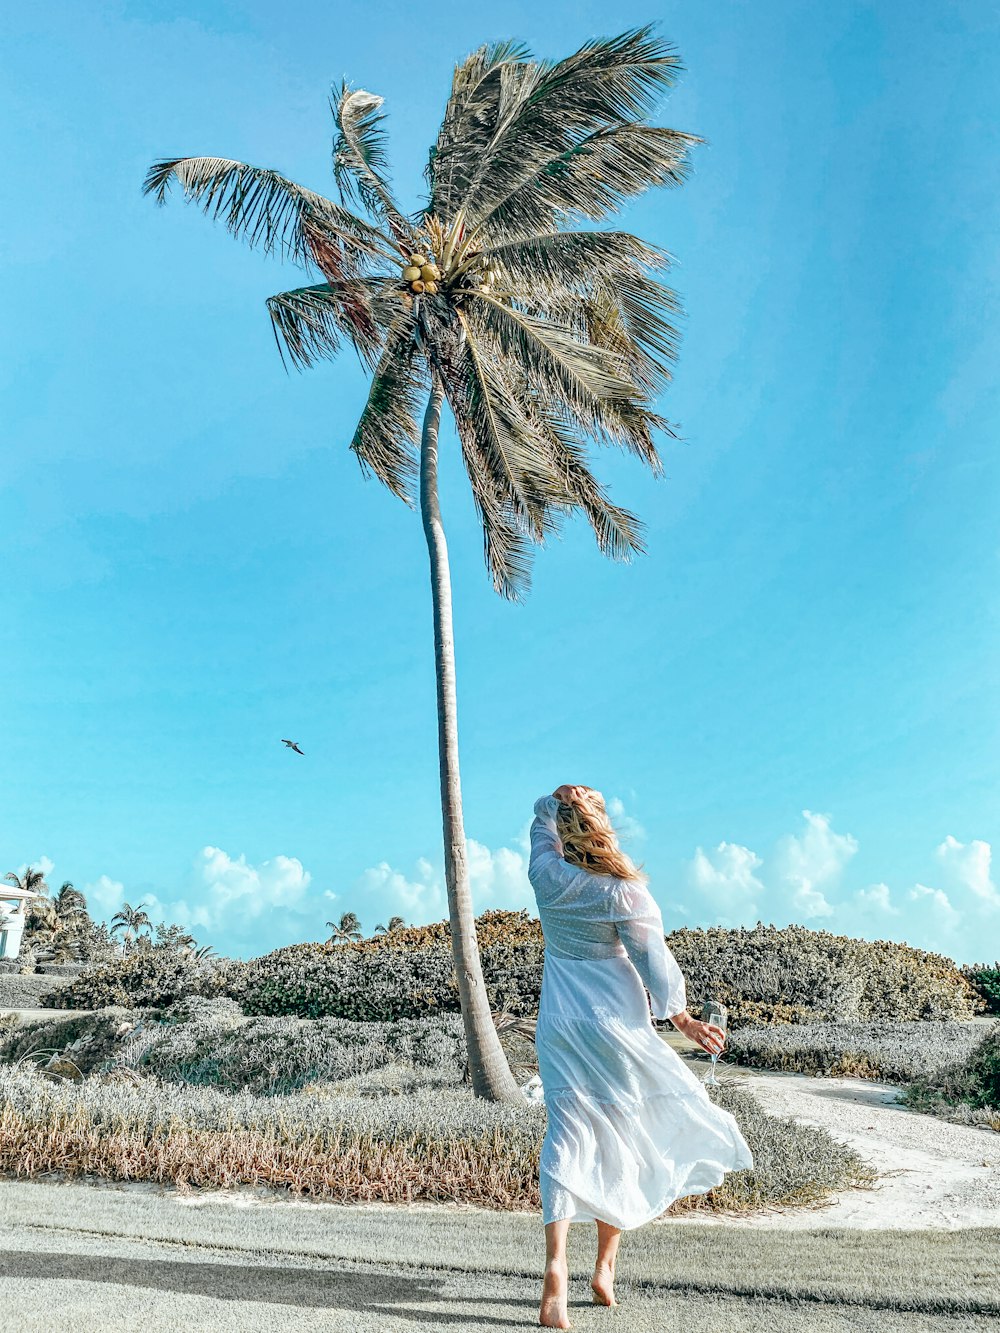 Mujer en vestido blanco de pie cerca de la palmera durante el día